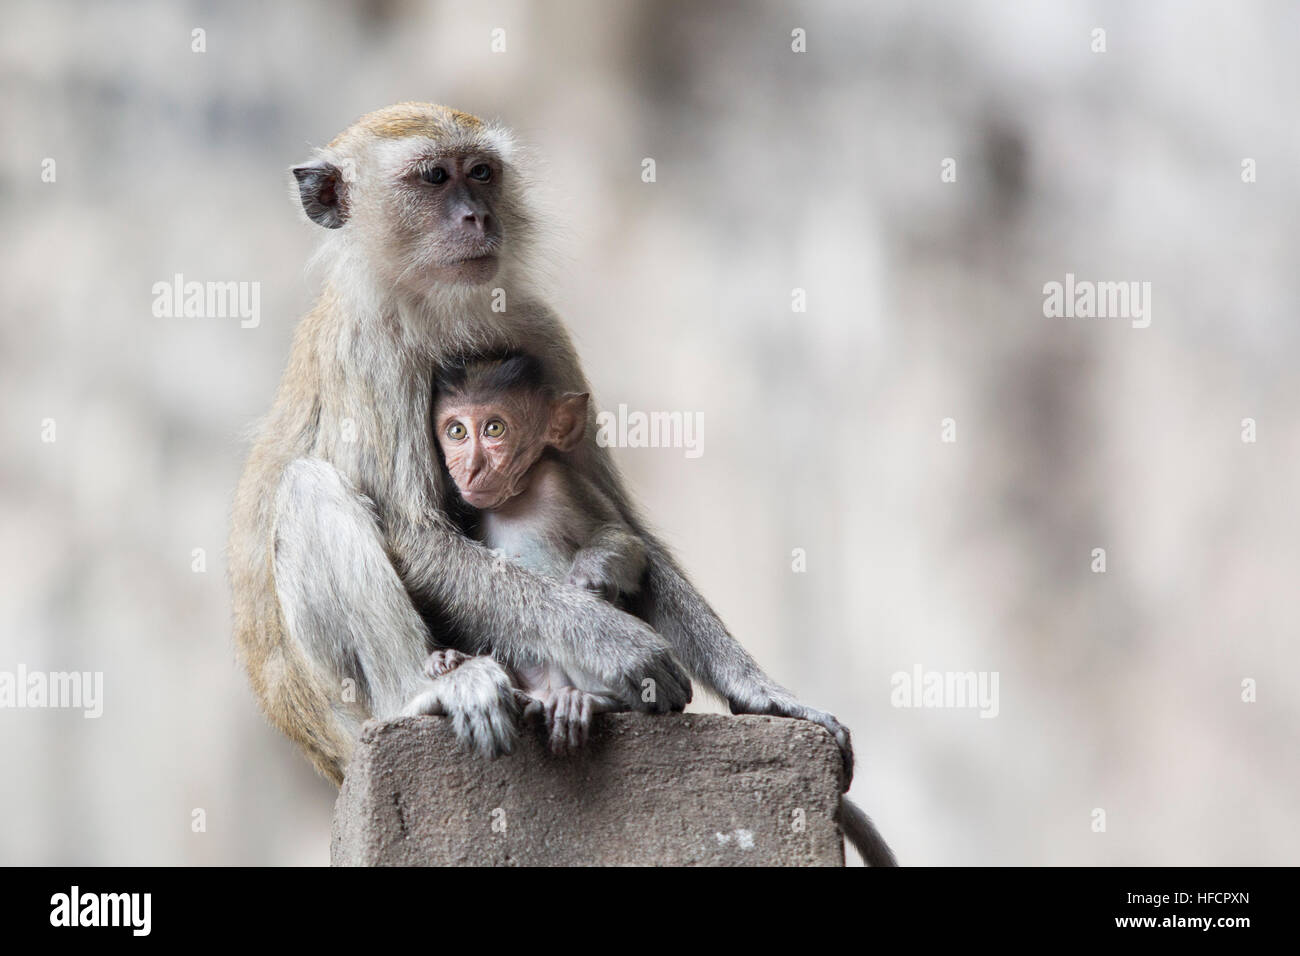 Une femelle macaque repose tout en alimentant son bébé à Batu Caves temple hindou à Kuala Lumpur, Malaisie Banque D'Images